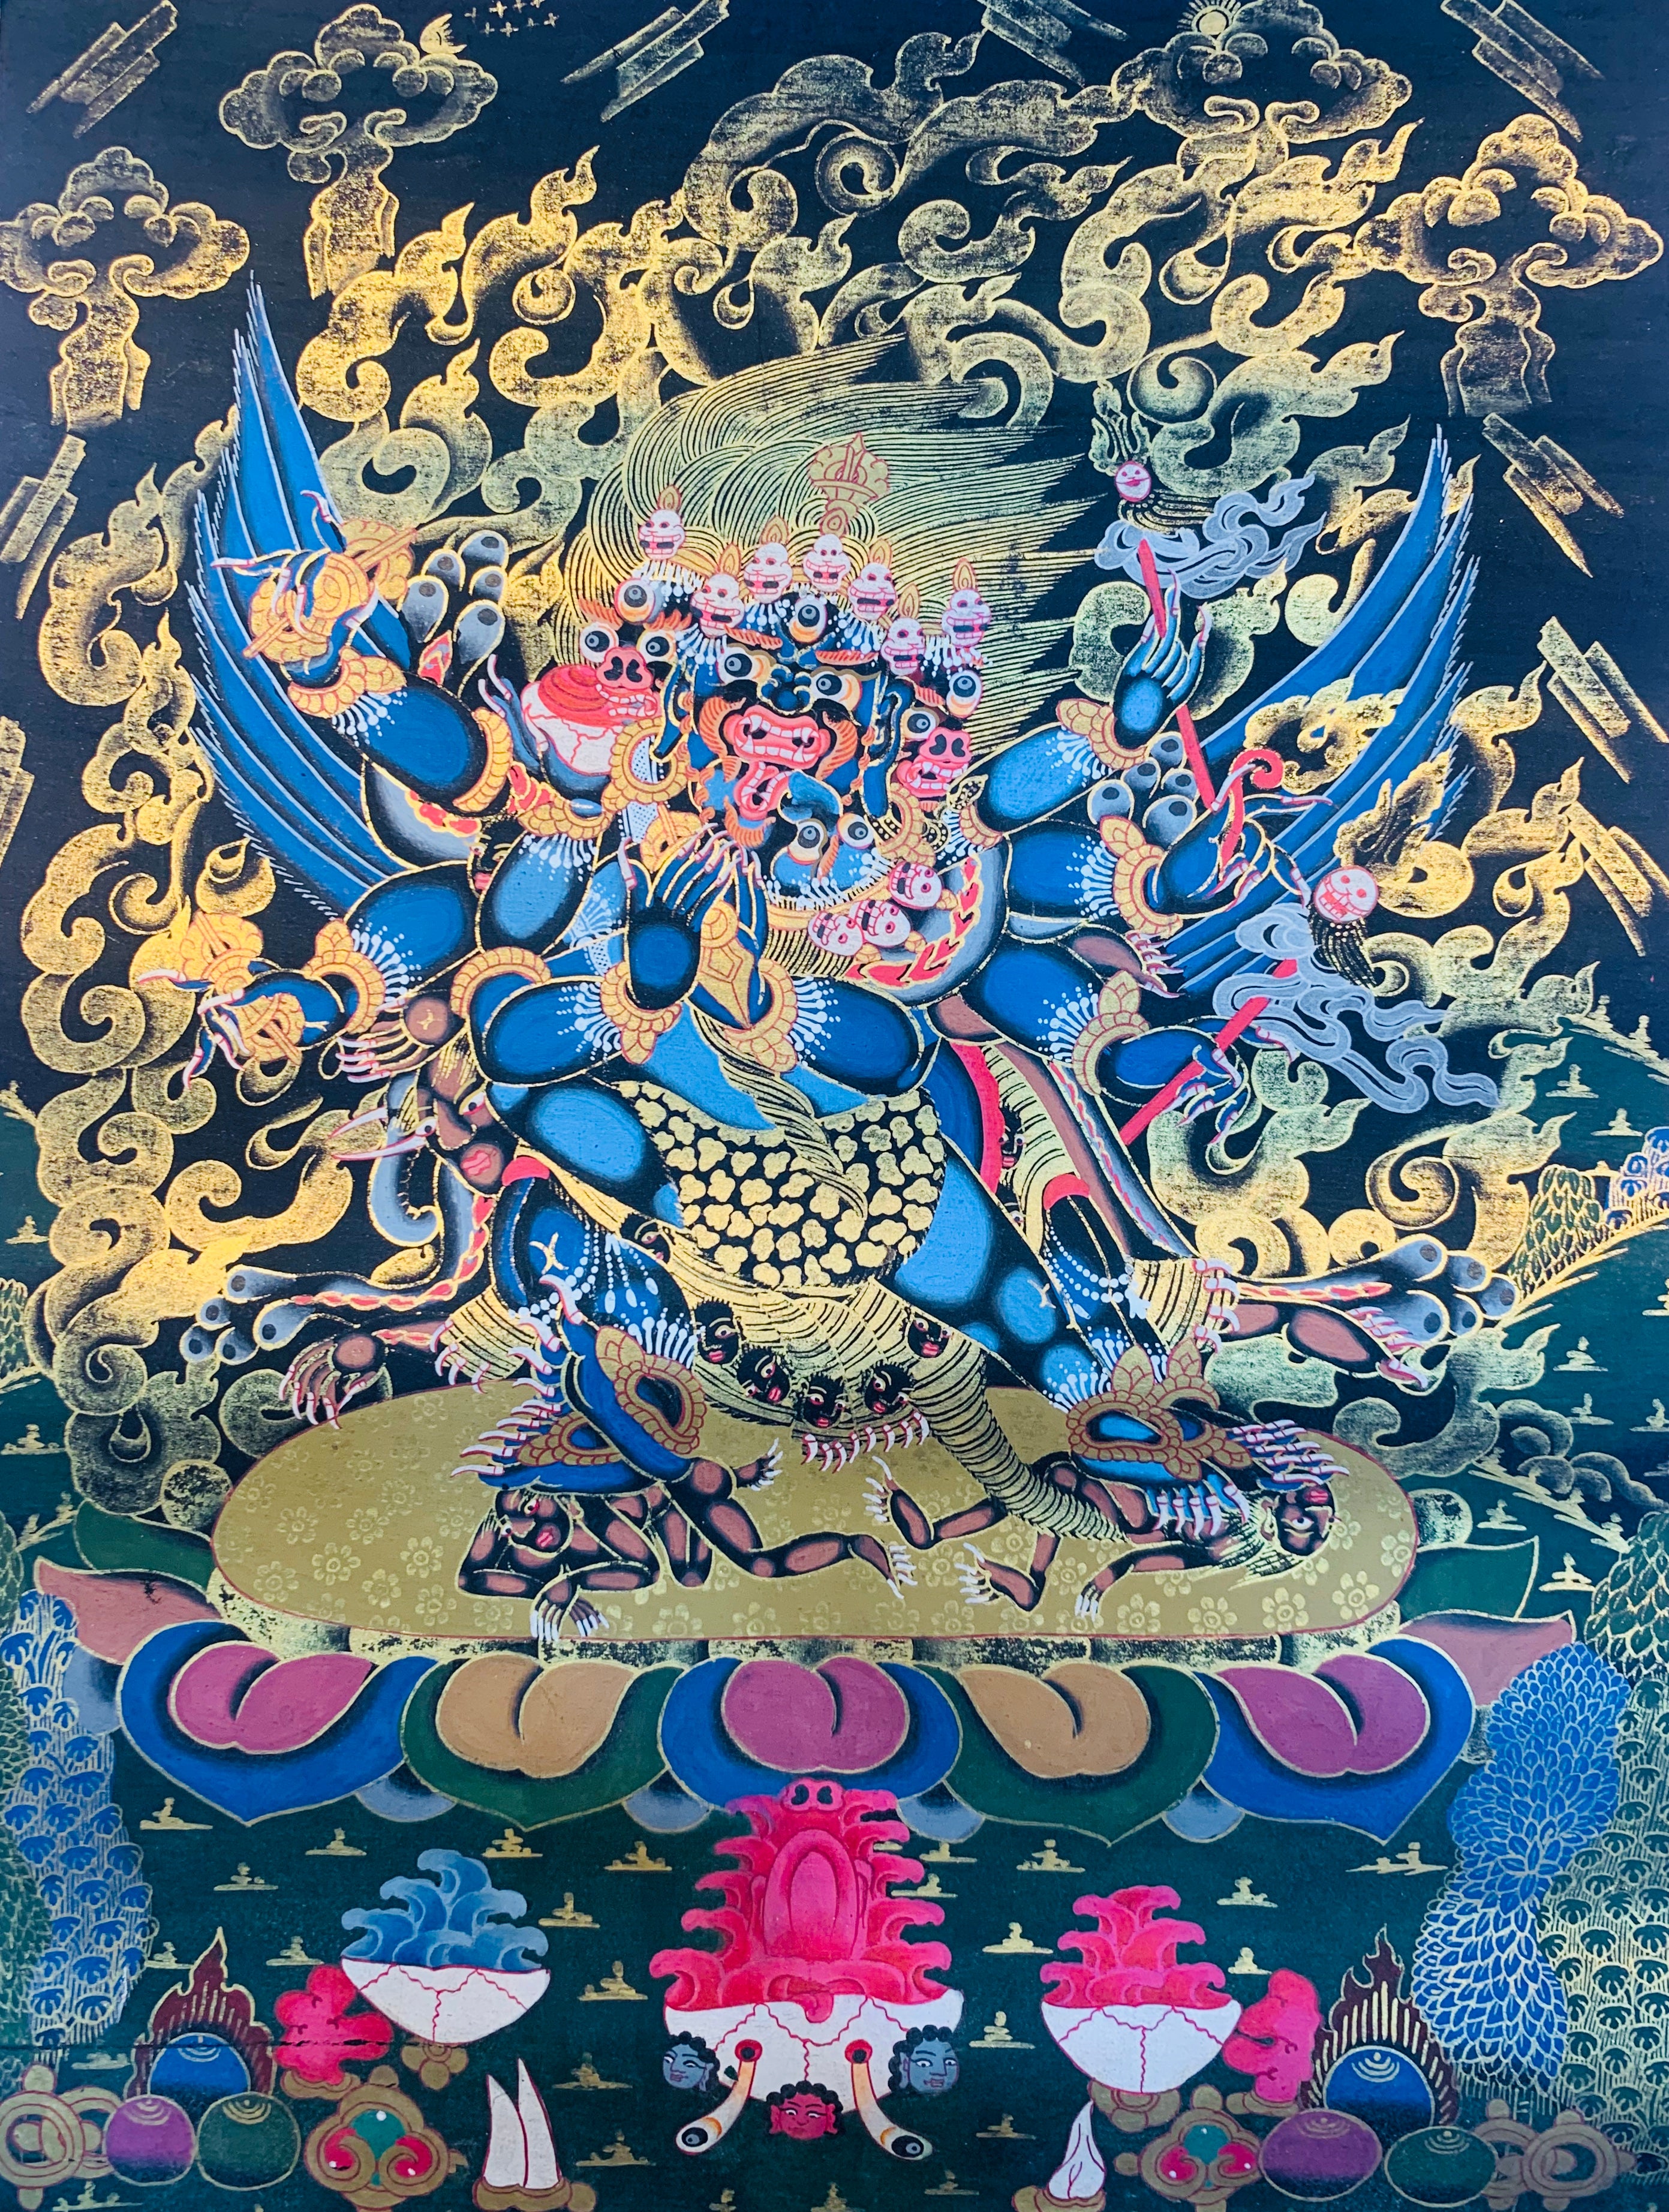 Wrathful Deity Vajrakilaya Thangka Painting 40*30 - The Thangka